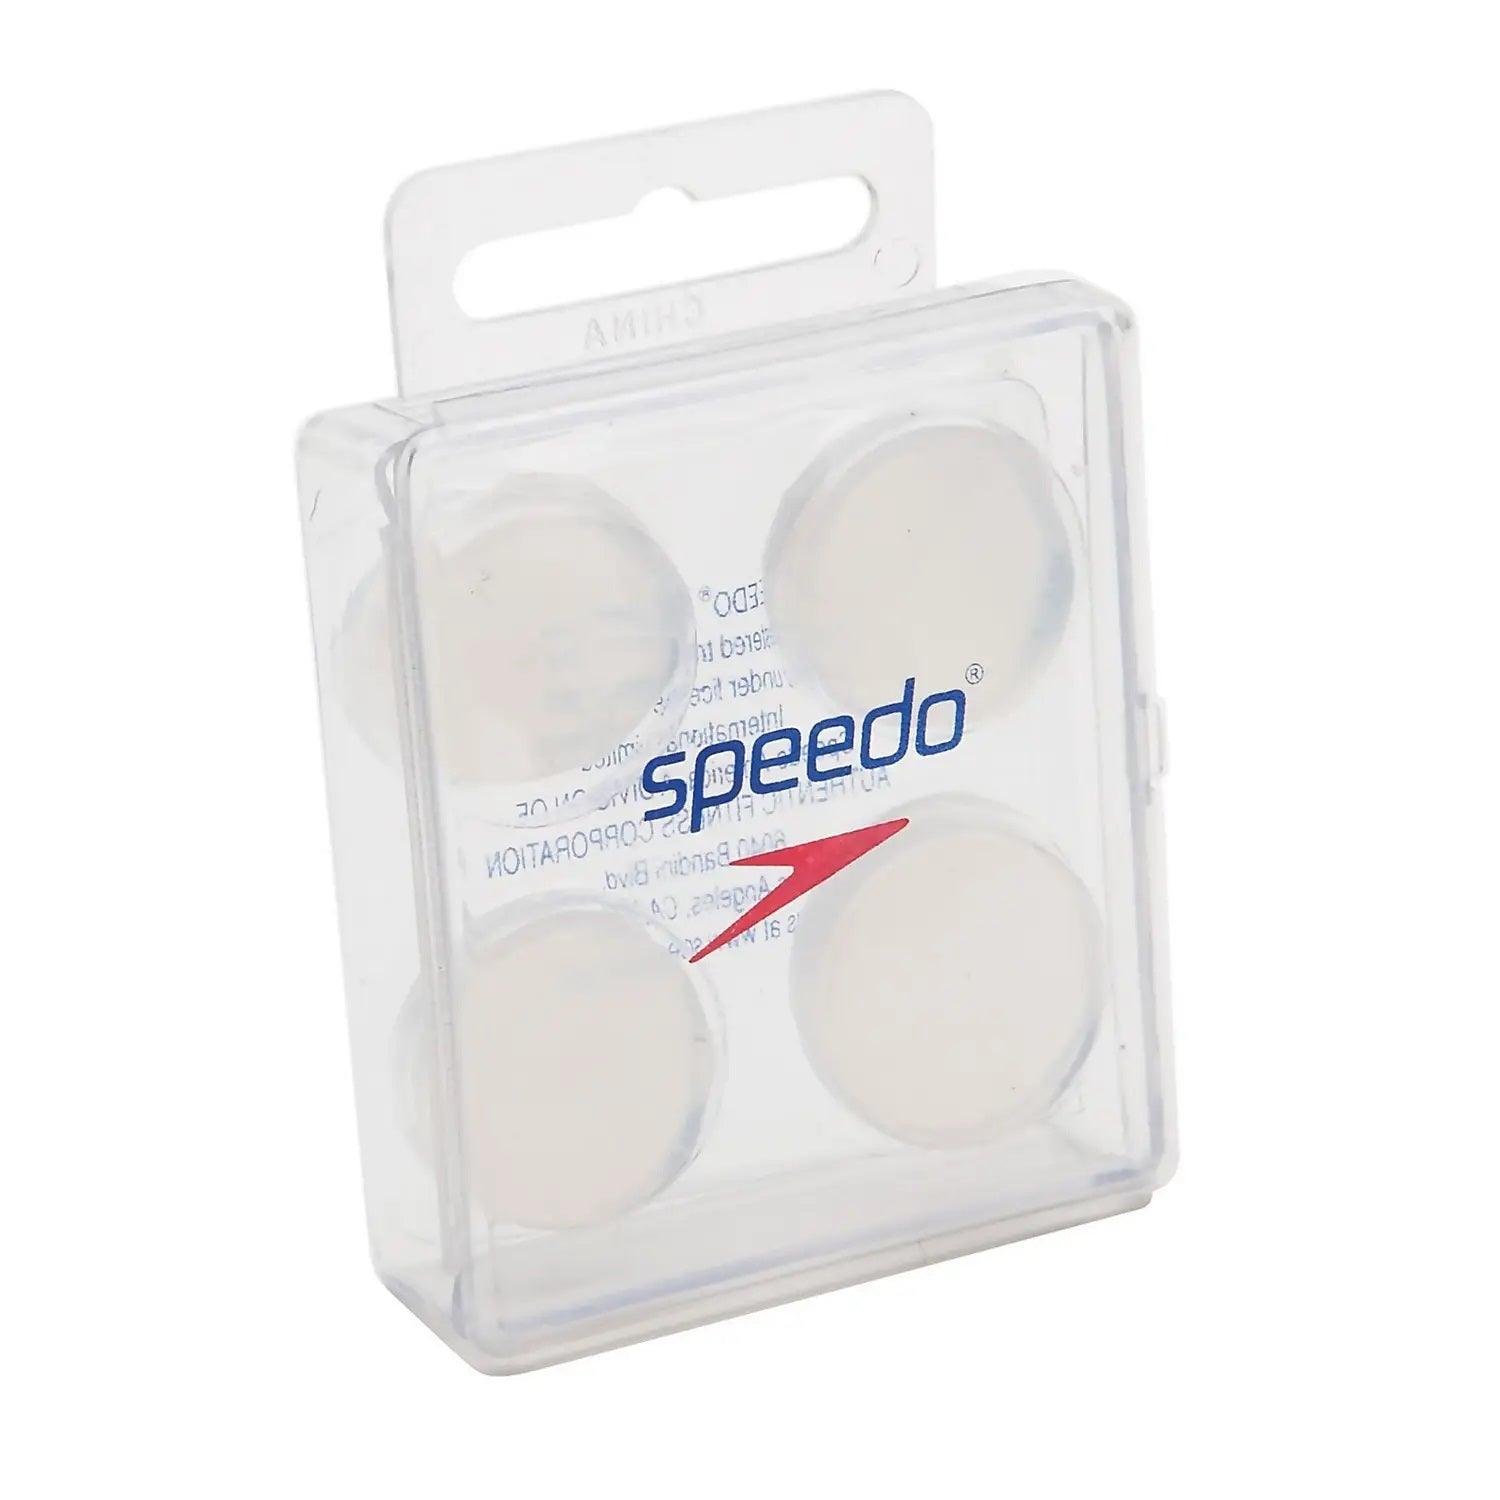 Specifiek Sport talent Speedo Silicone Putty Earplugs | Buy at XtremeSwim.com